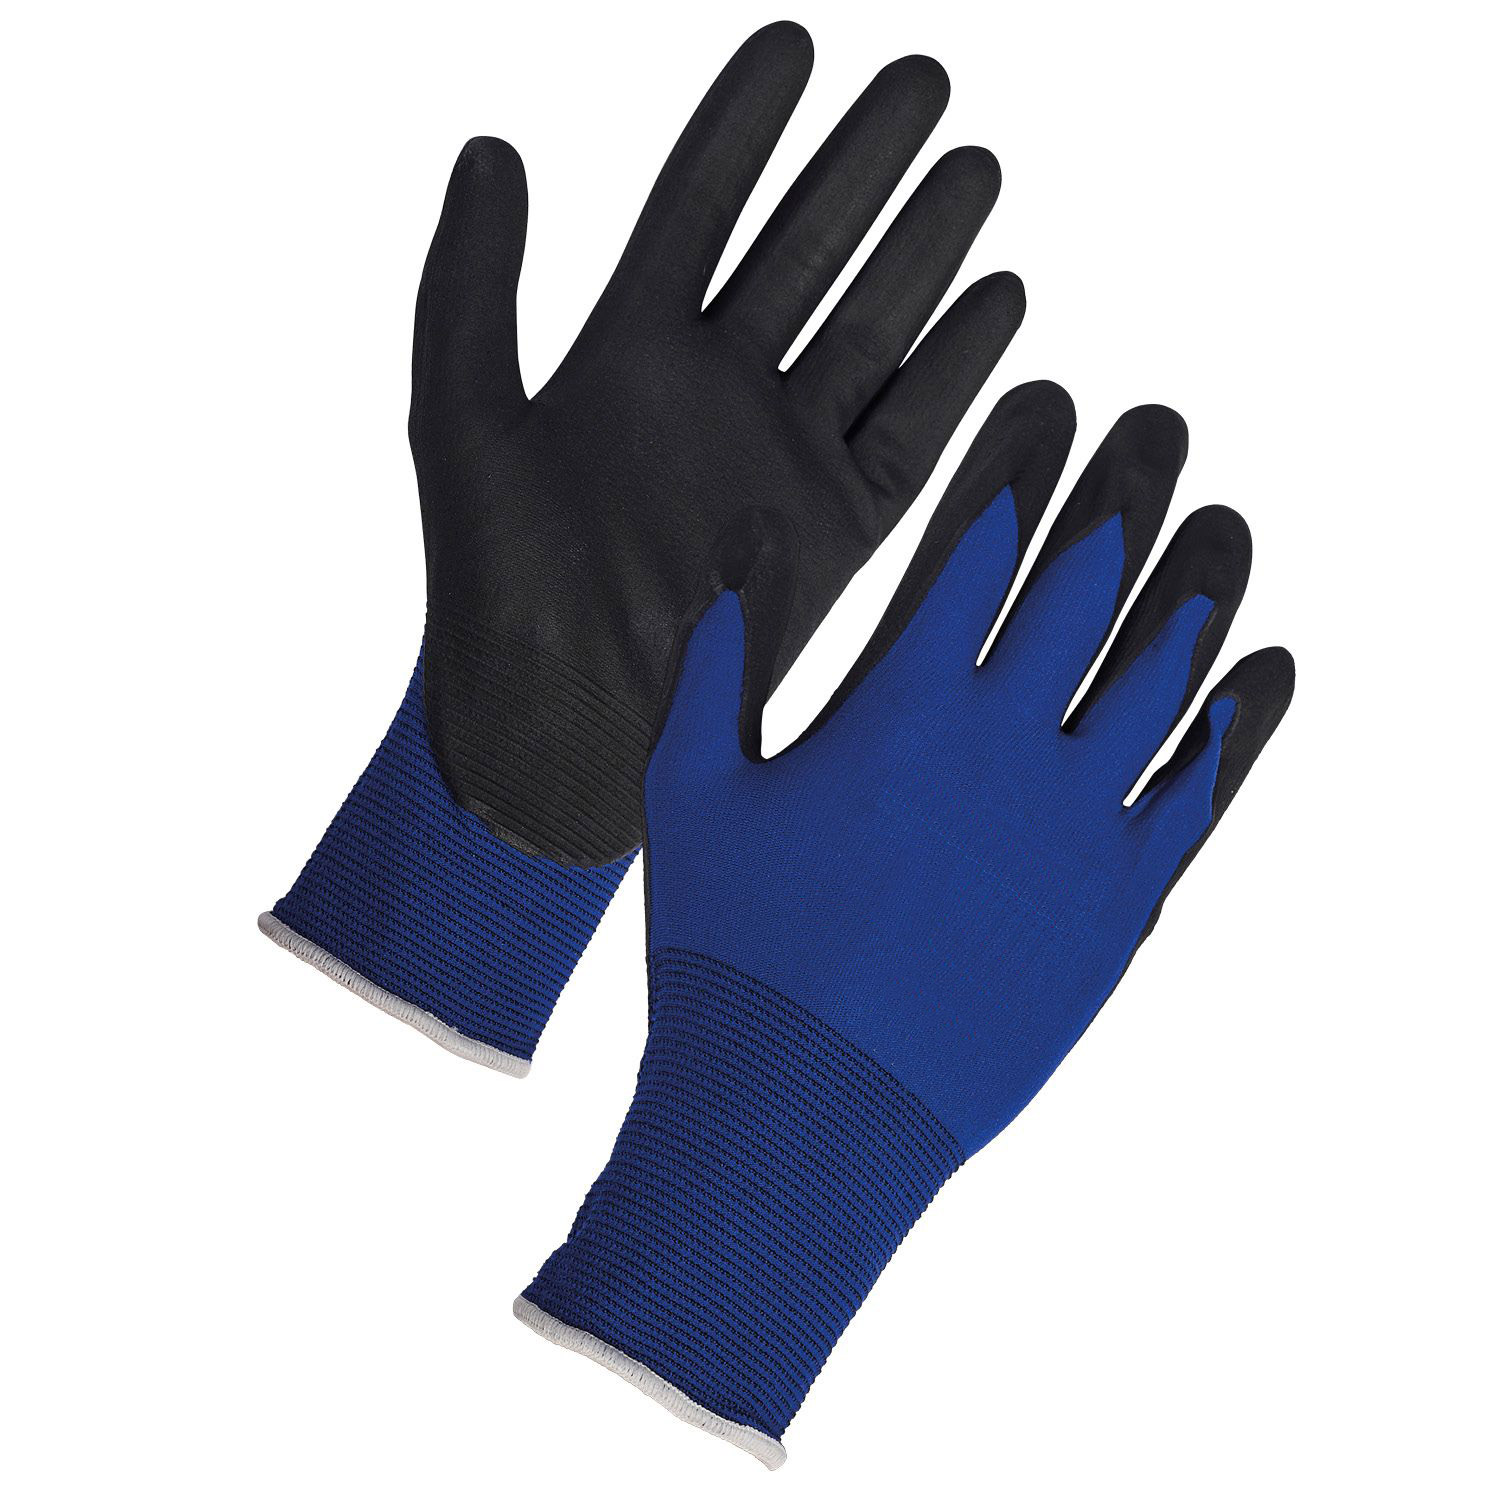 Ultra Dexterous Glove